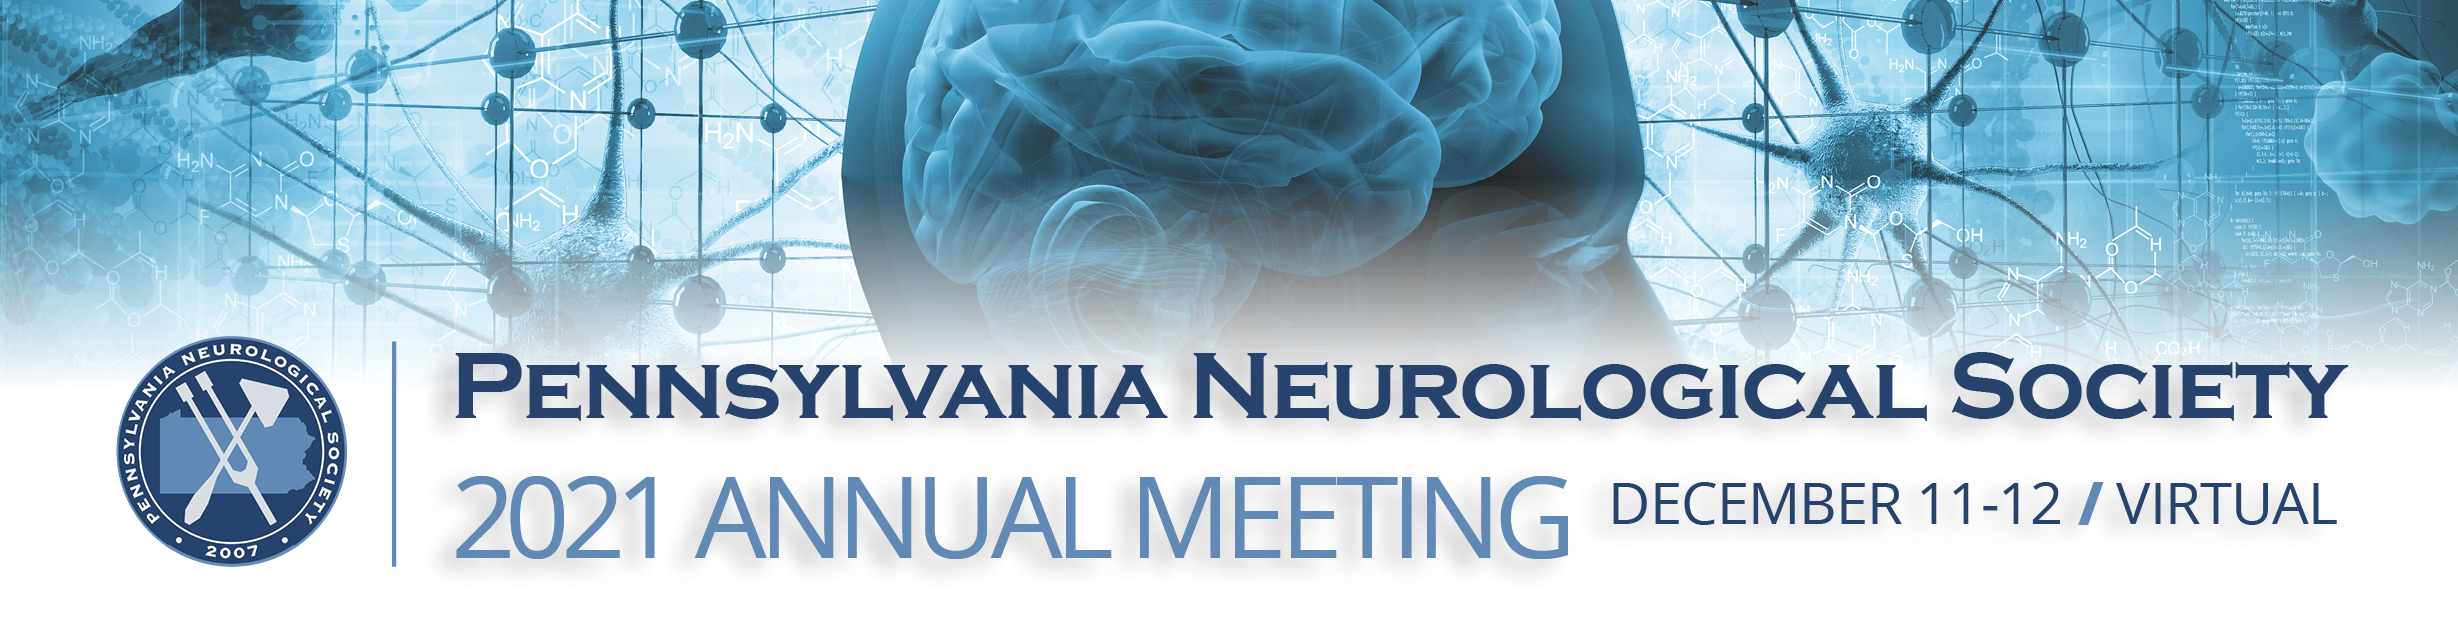 2021 Pennsylvania Neurological Society Annual Meeting